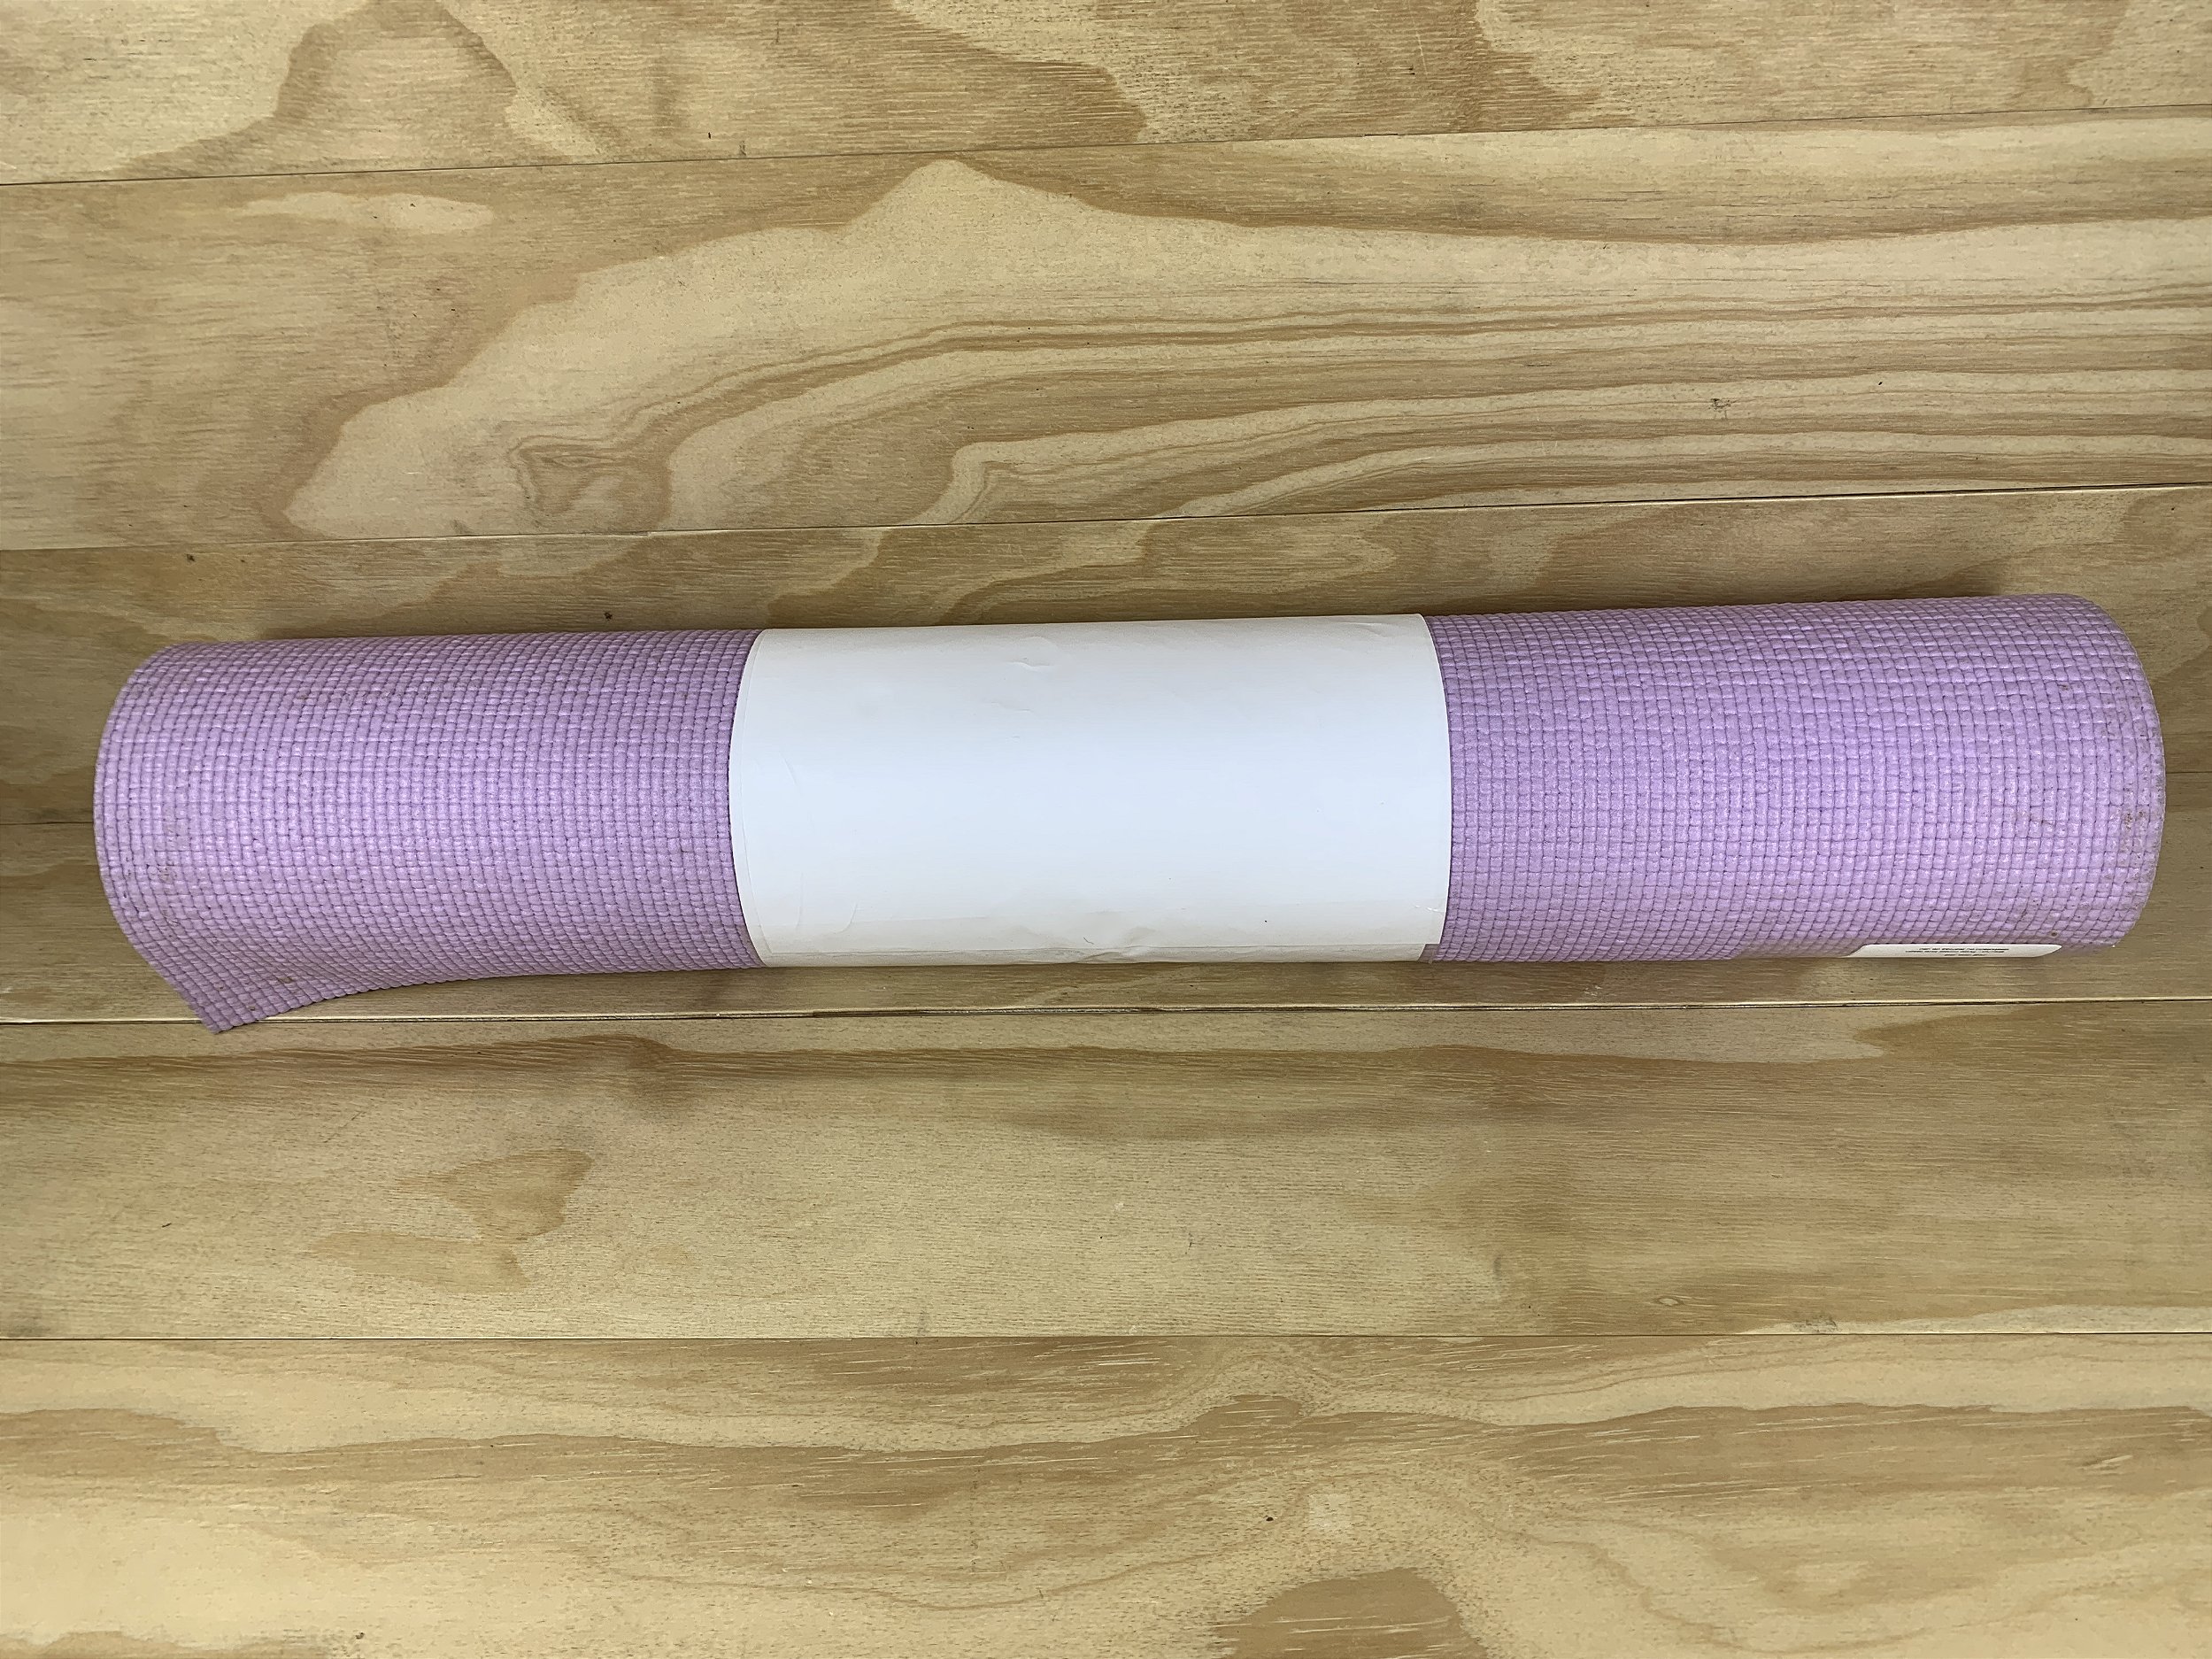 Tapete de Yoga Minimal – Purple